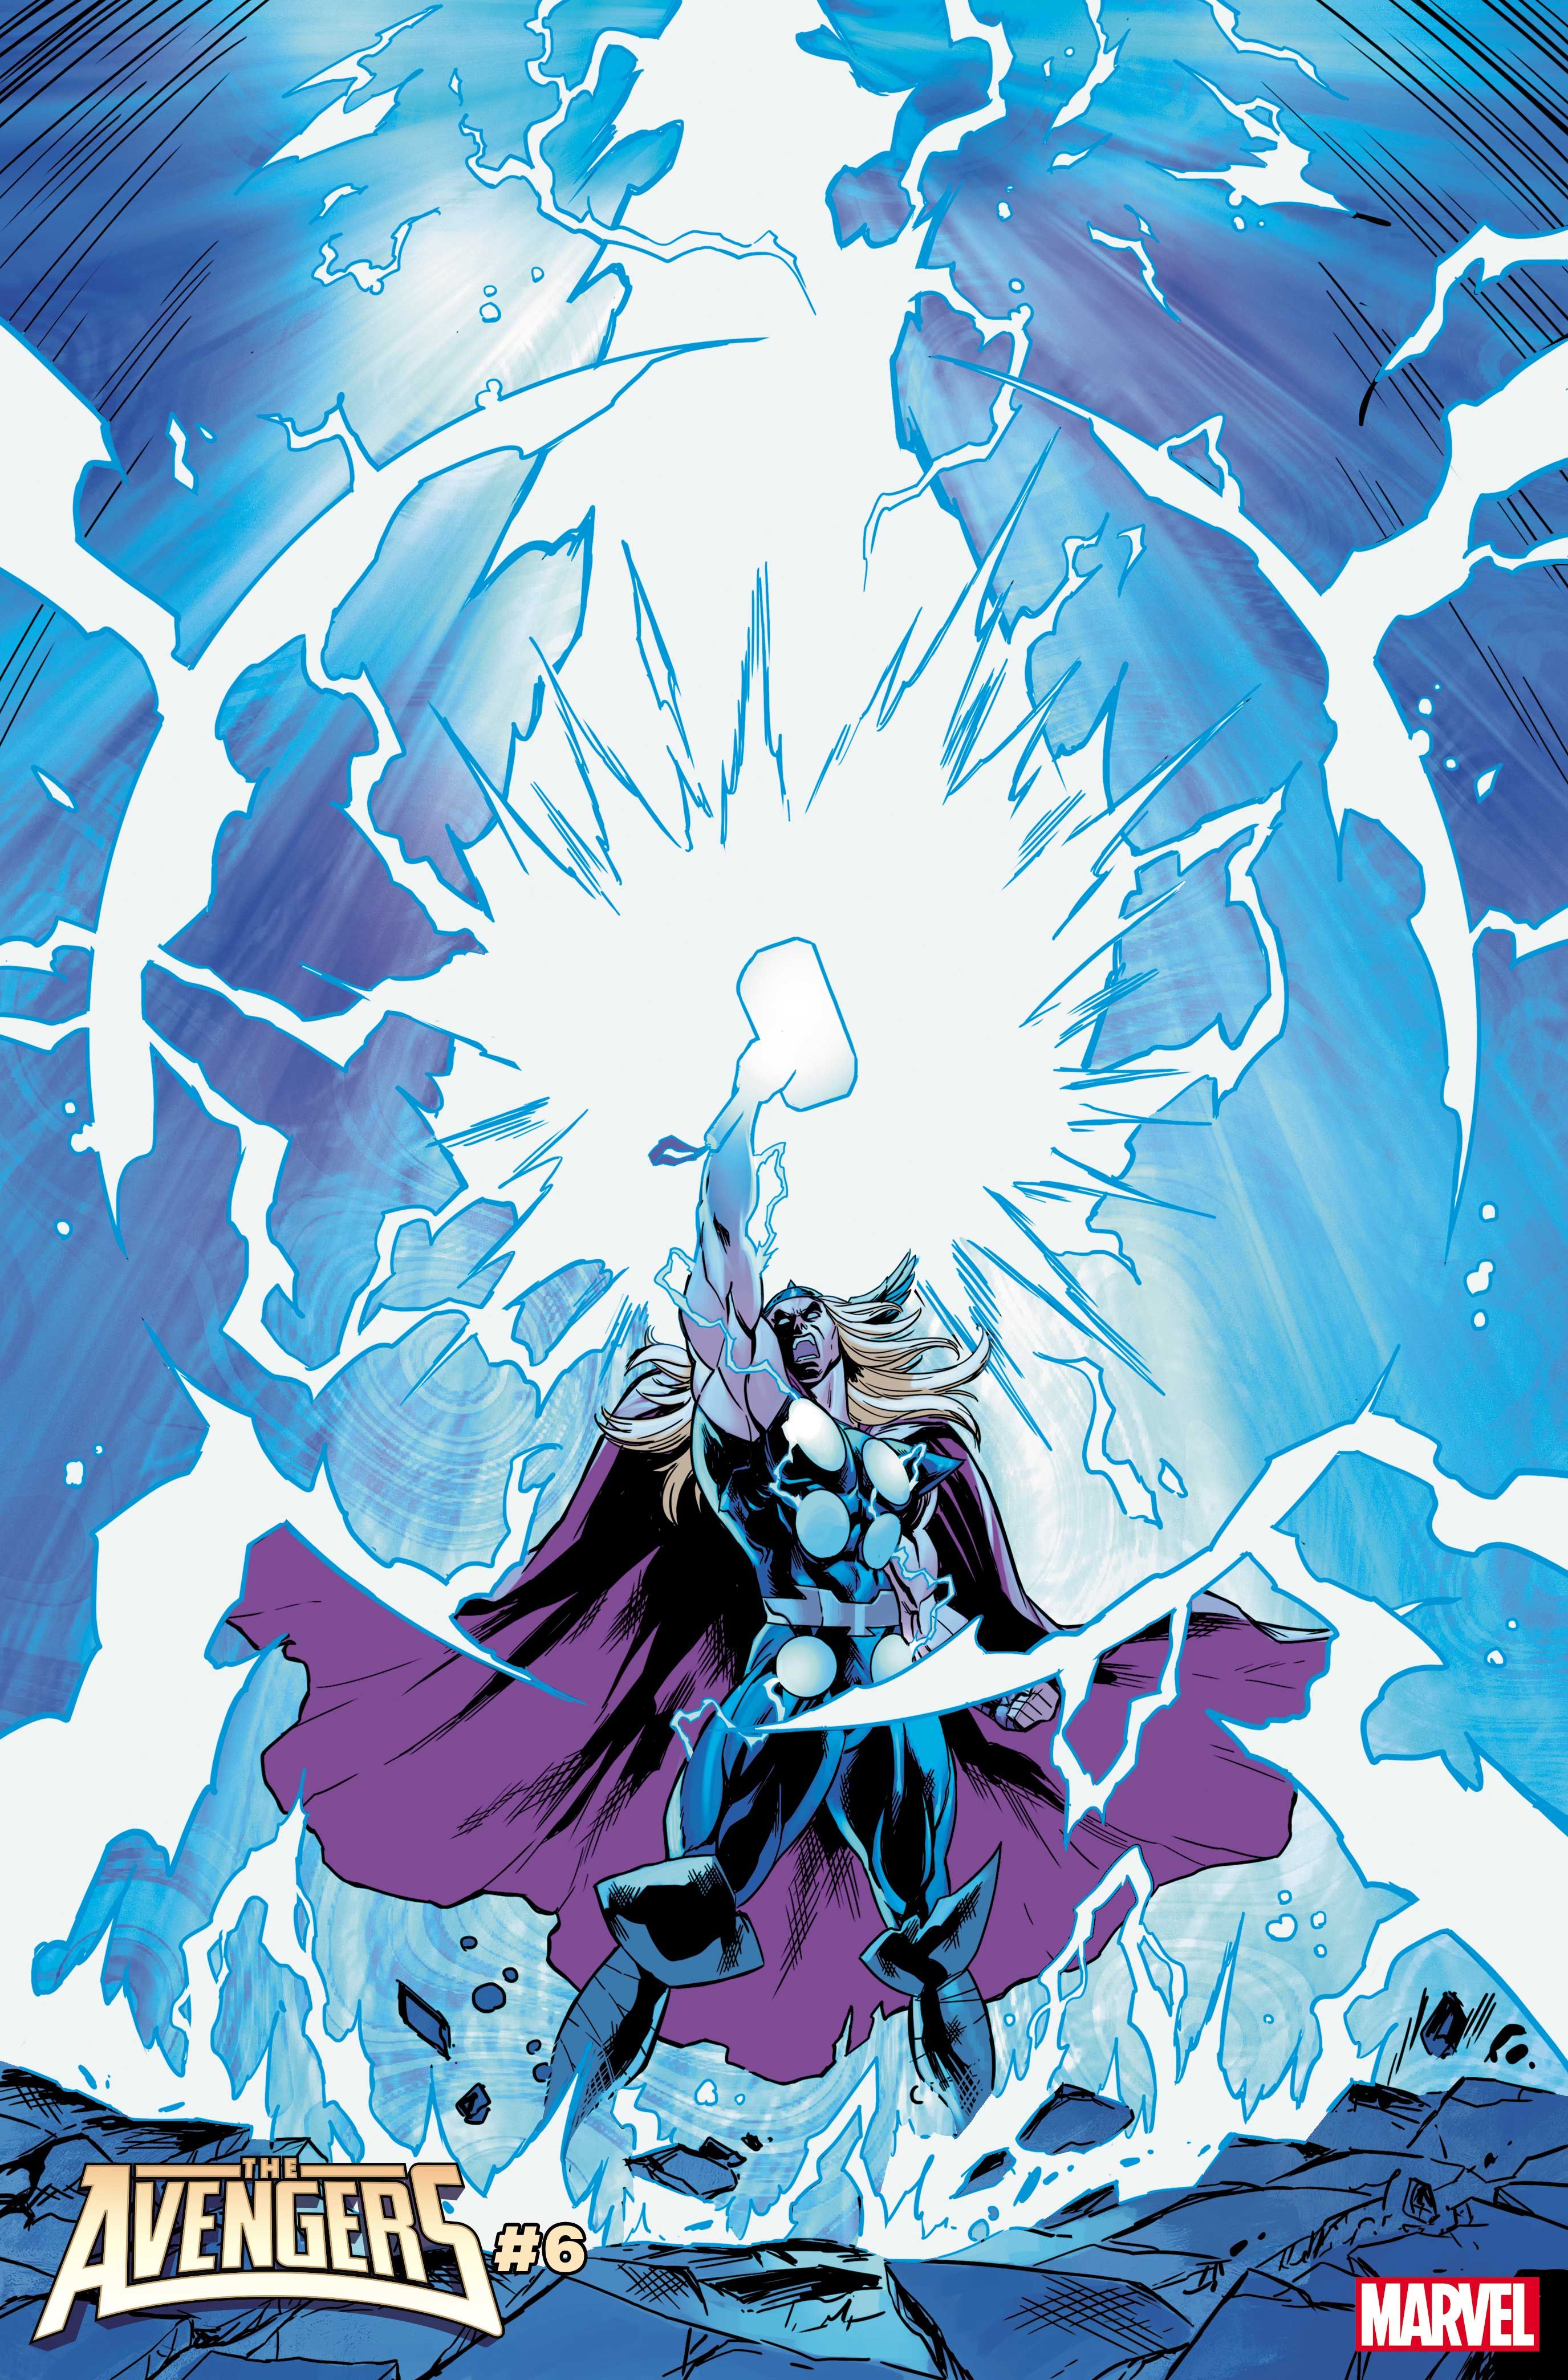 Thor summons lightning in Marvel's Avengers #6